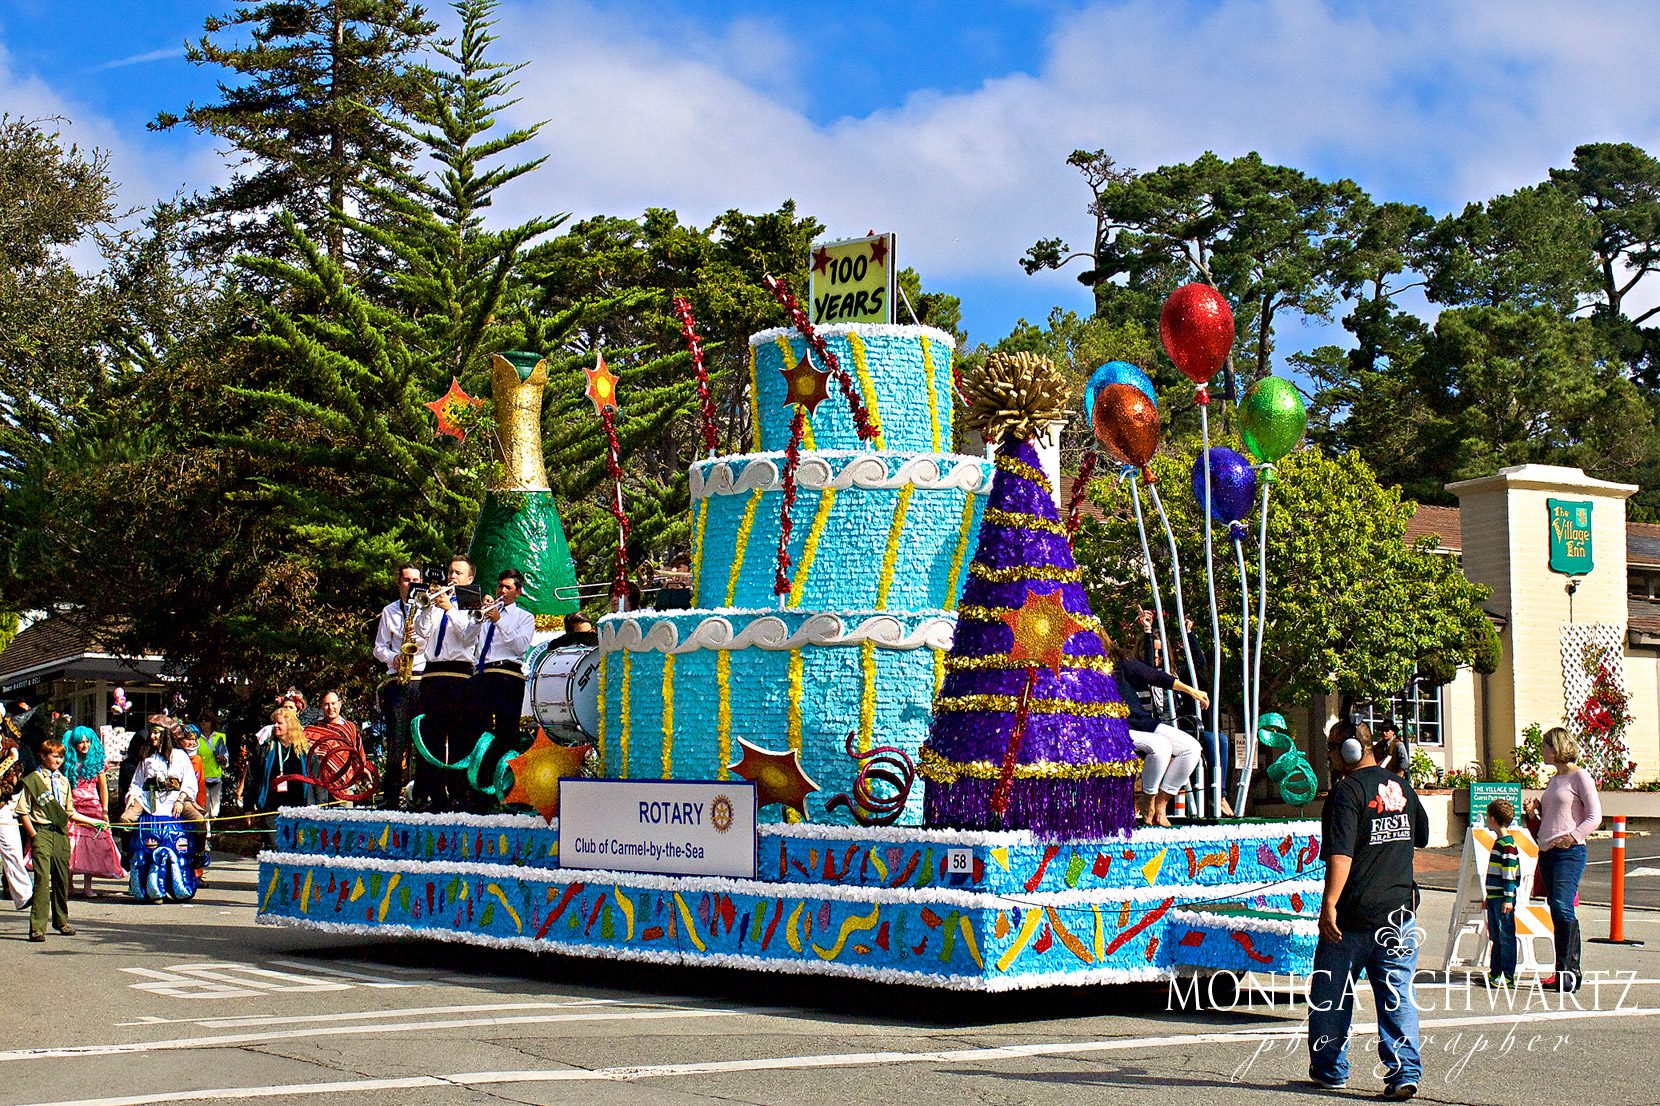 Centennial-Parade-in-Carmel-by-the-Sea-California